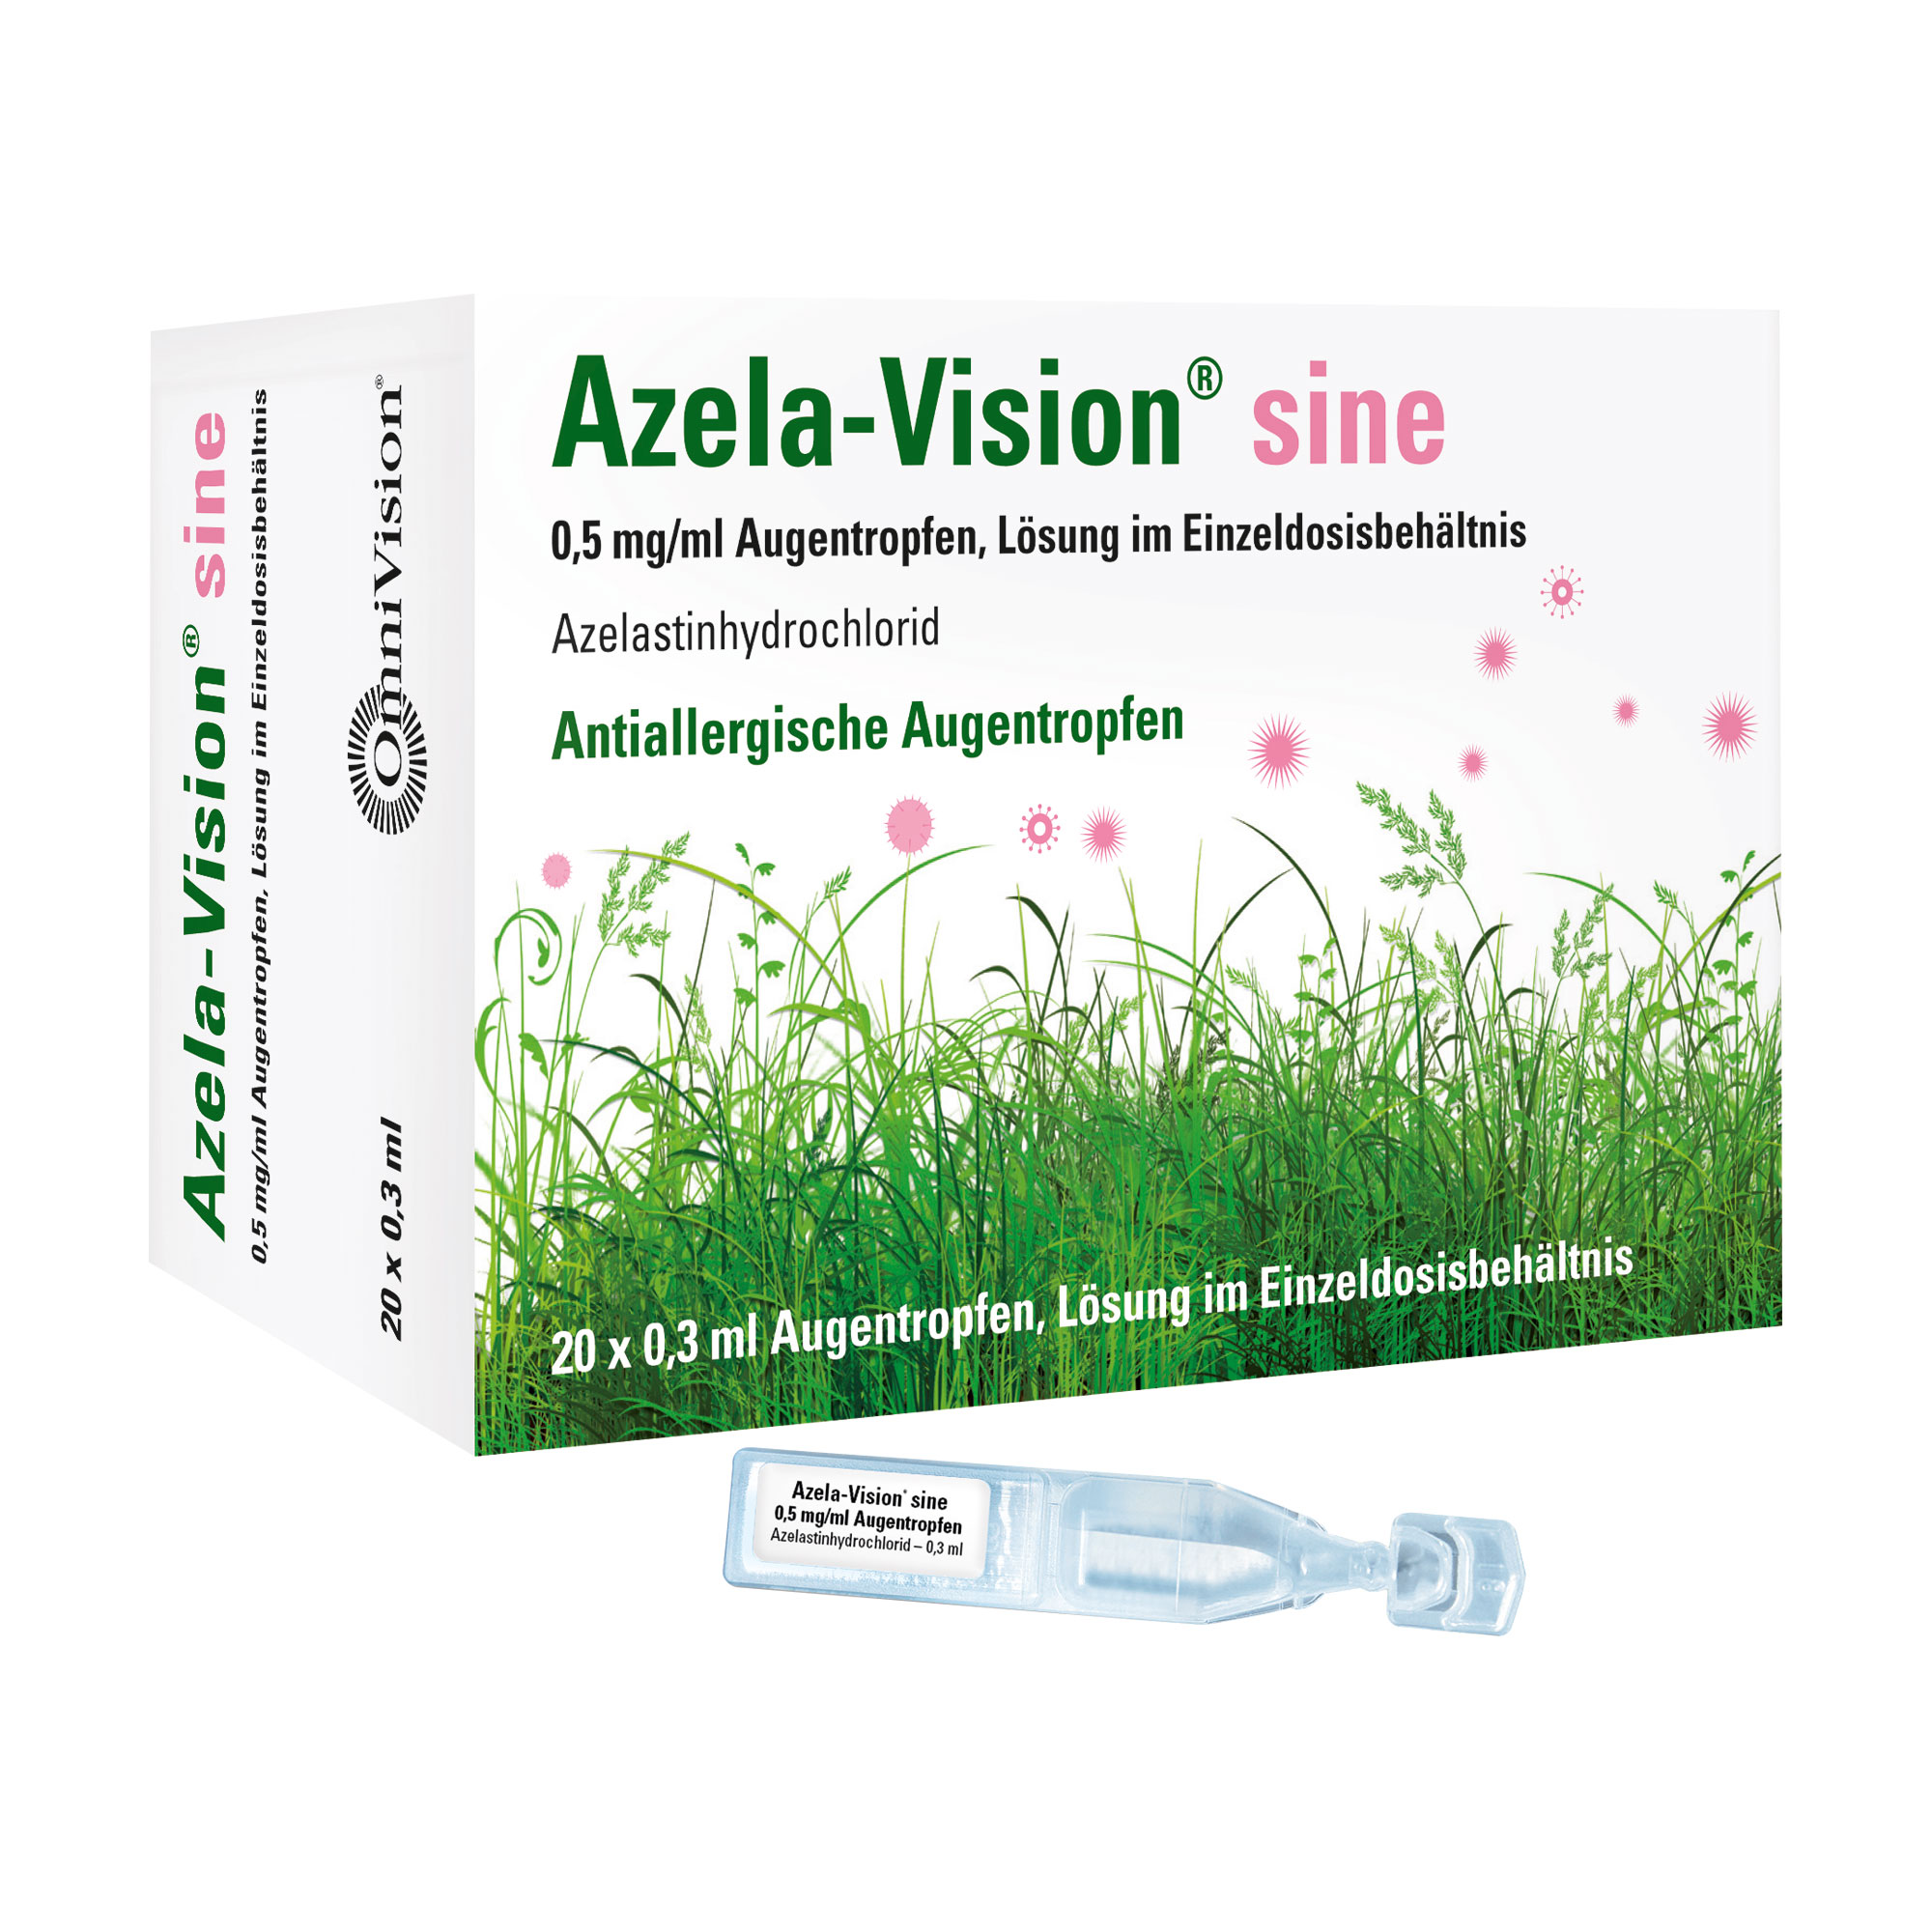 Zur Behandlung und Vorbeugung von Augenbeschwerden aufgrund von Heuschnupfen und Allergien.